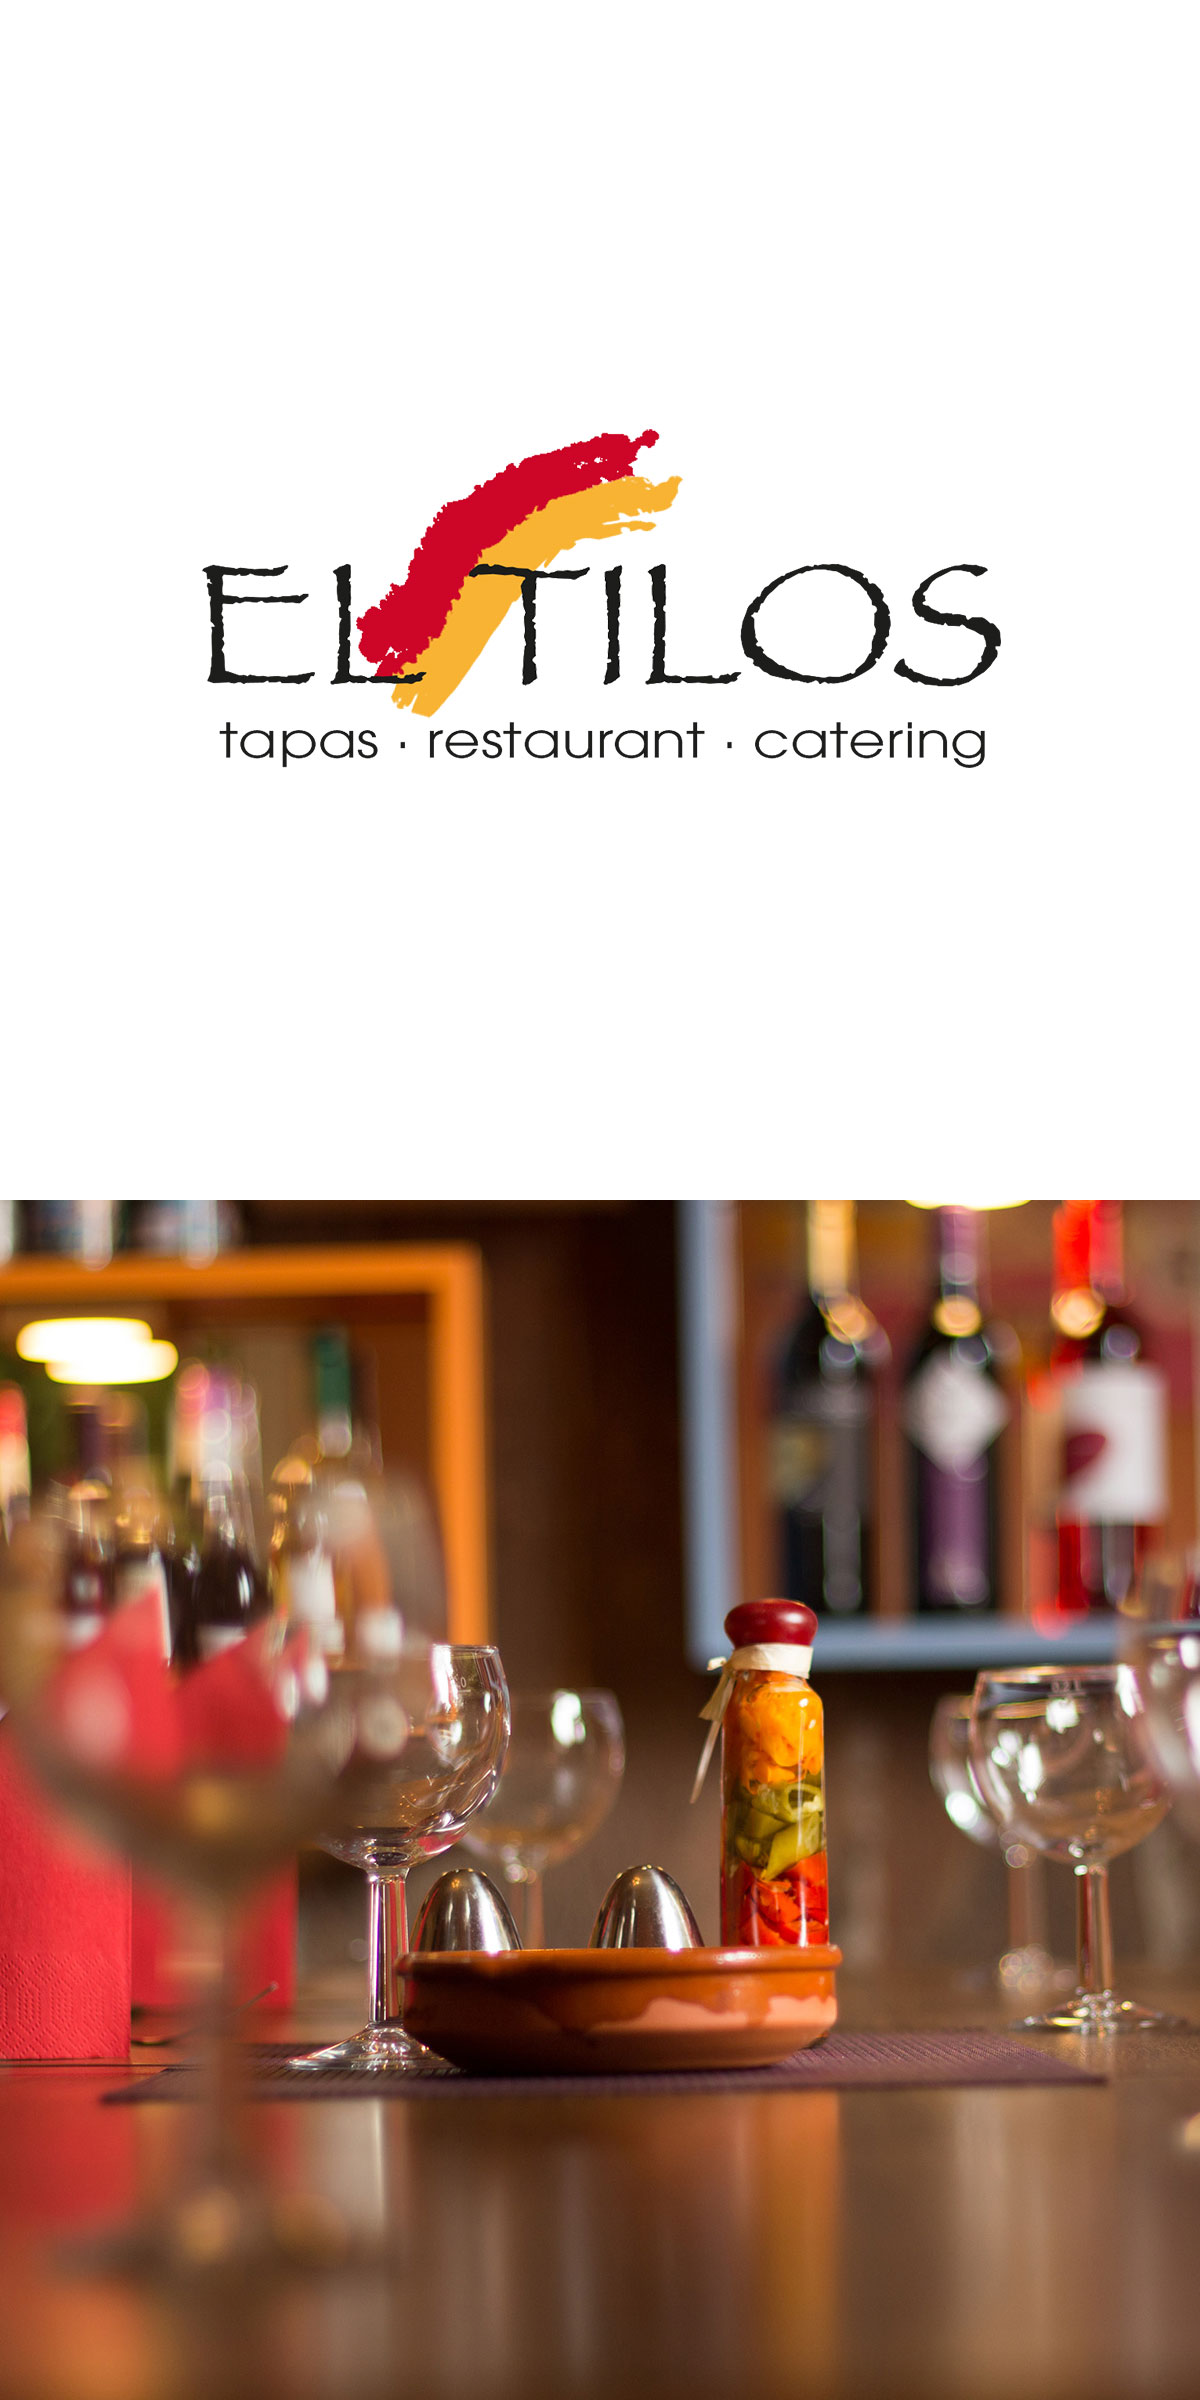 El Tilos - Das spanische Restaurant in Wittlich